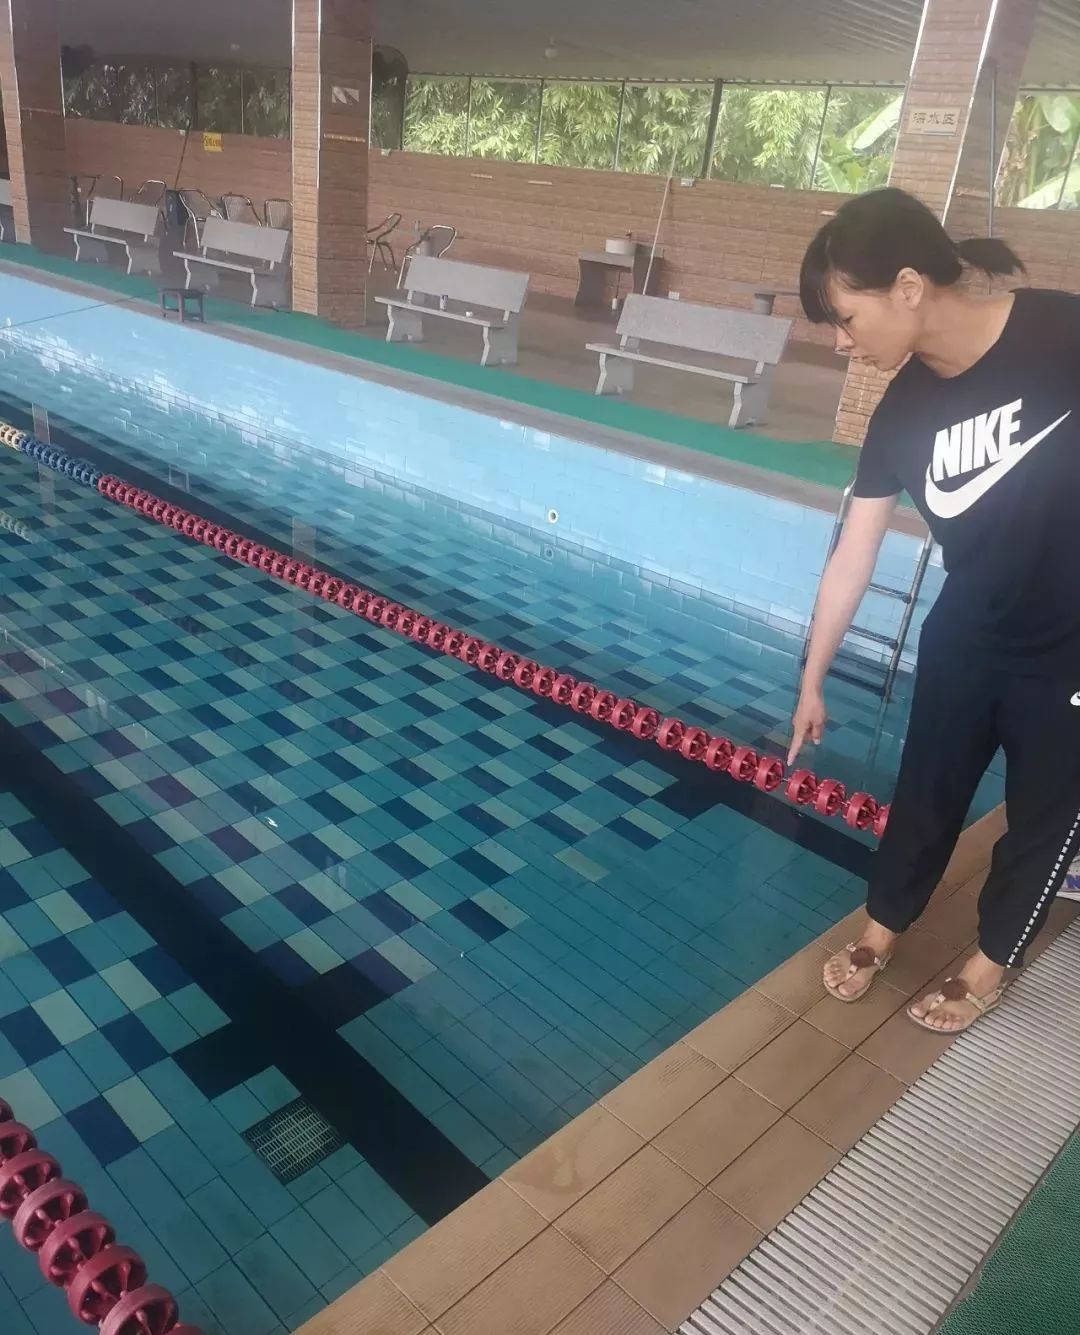 13岁女孩游泳 意外图片